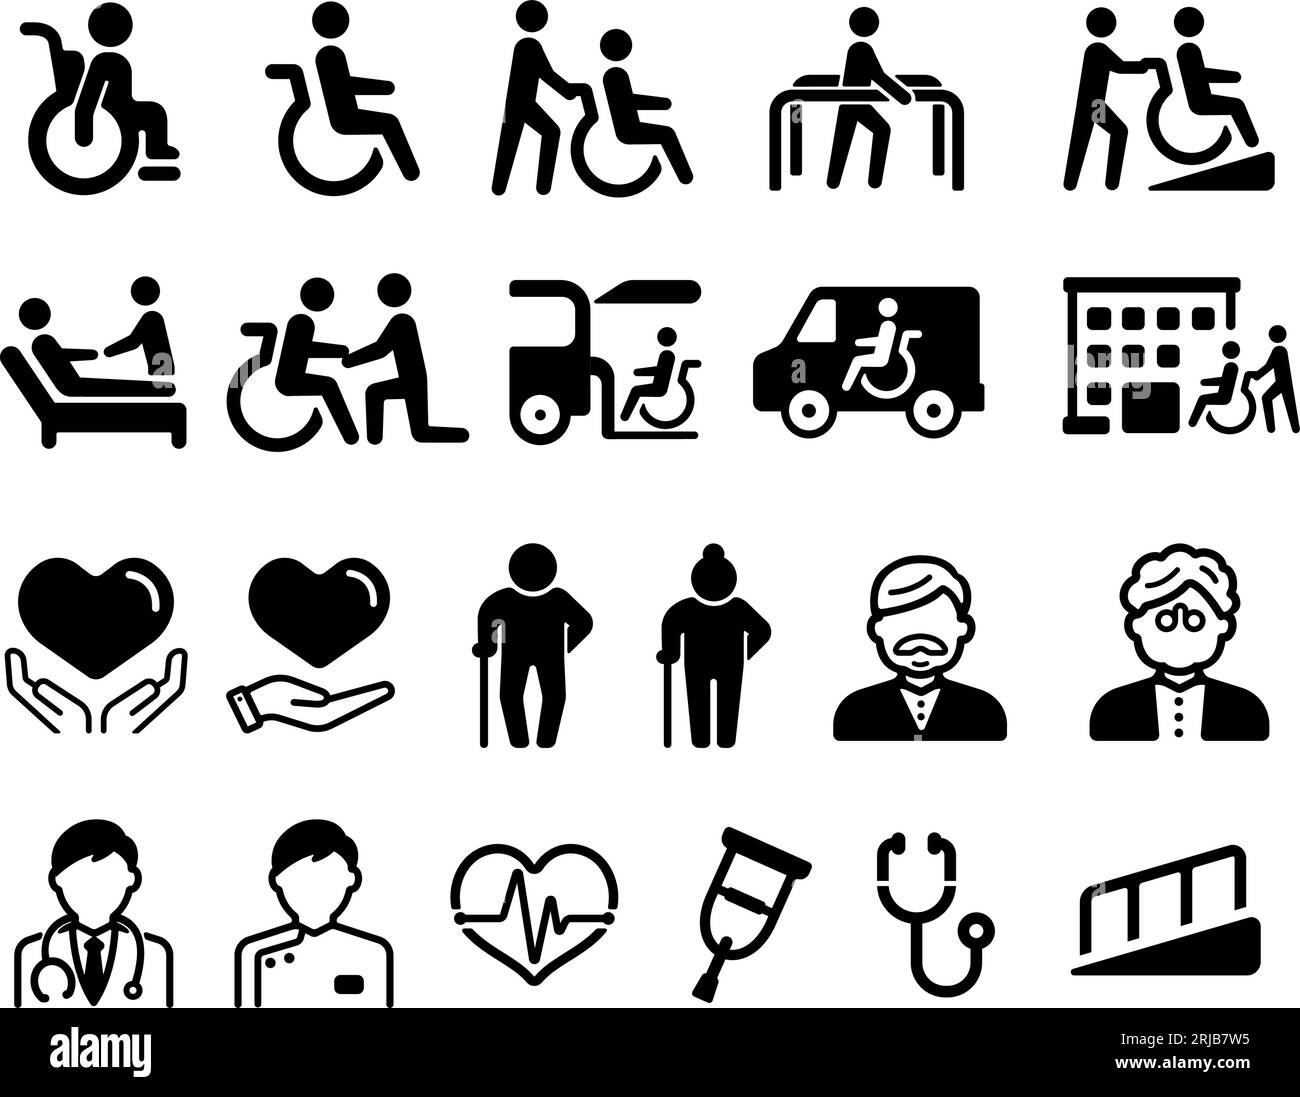 Vektorsymbolillustrationen für das Wohlergehen älterer Menschen, Menschen mit Behinderungen usw. Stock Vektor